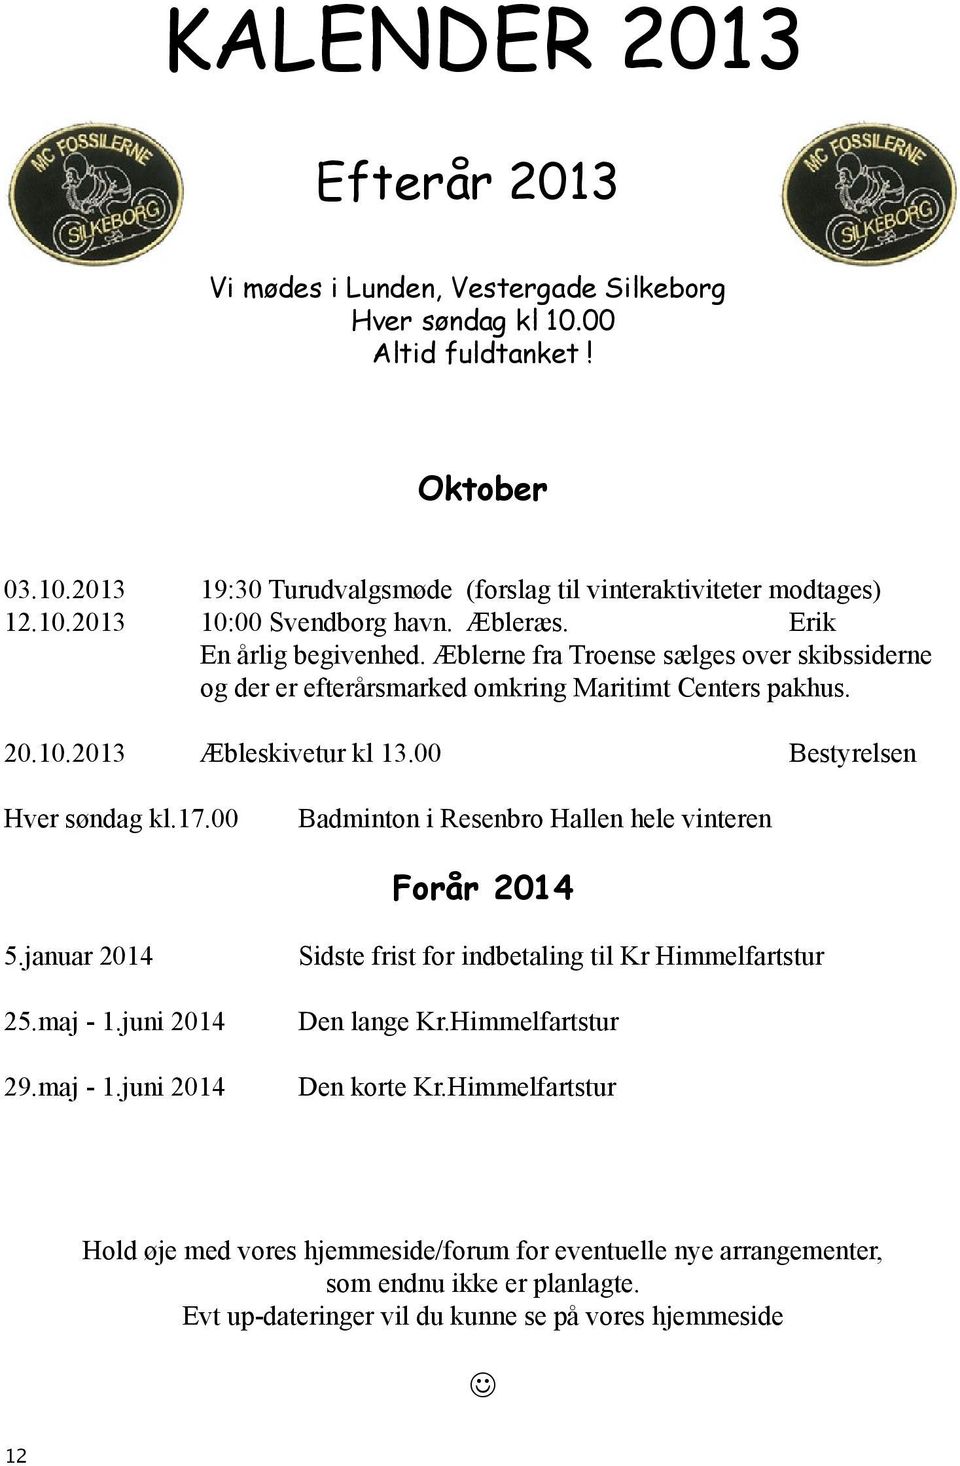 17.00 Badminton i Resenbro Hallen hele vinteren Forår 2014 5.januar 2014 25.maj - 1.juni 2014 29.maj - 1.juni 2014 Sidste frist for indbetaling til Kr Himmelfartstur Den lange Kr.